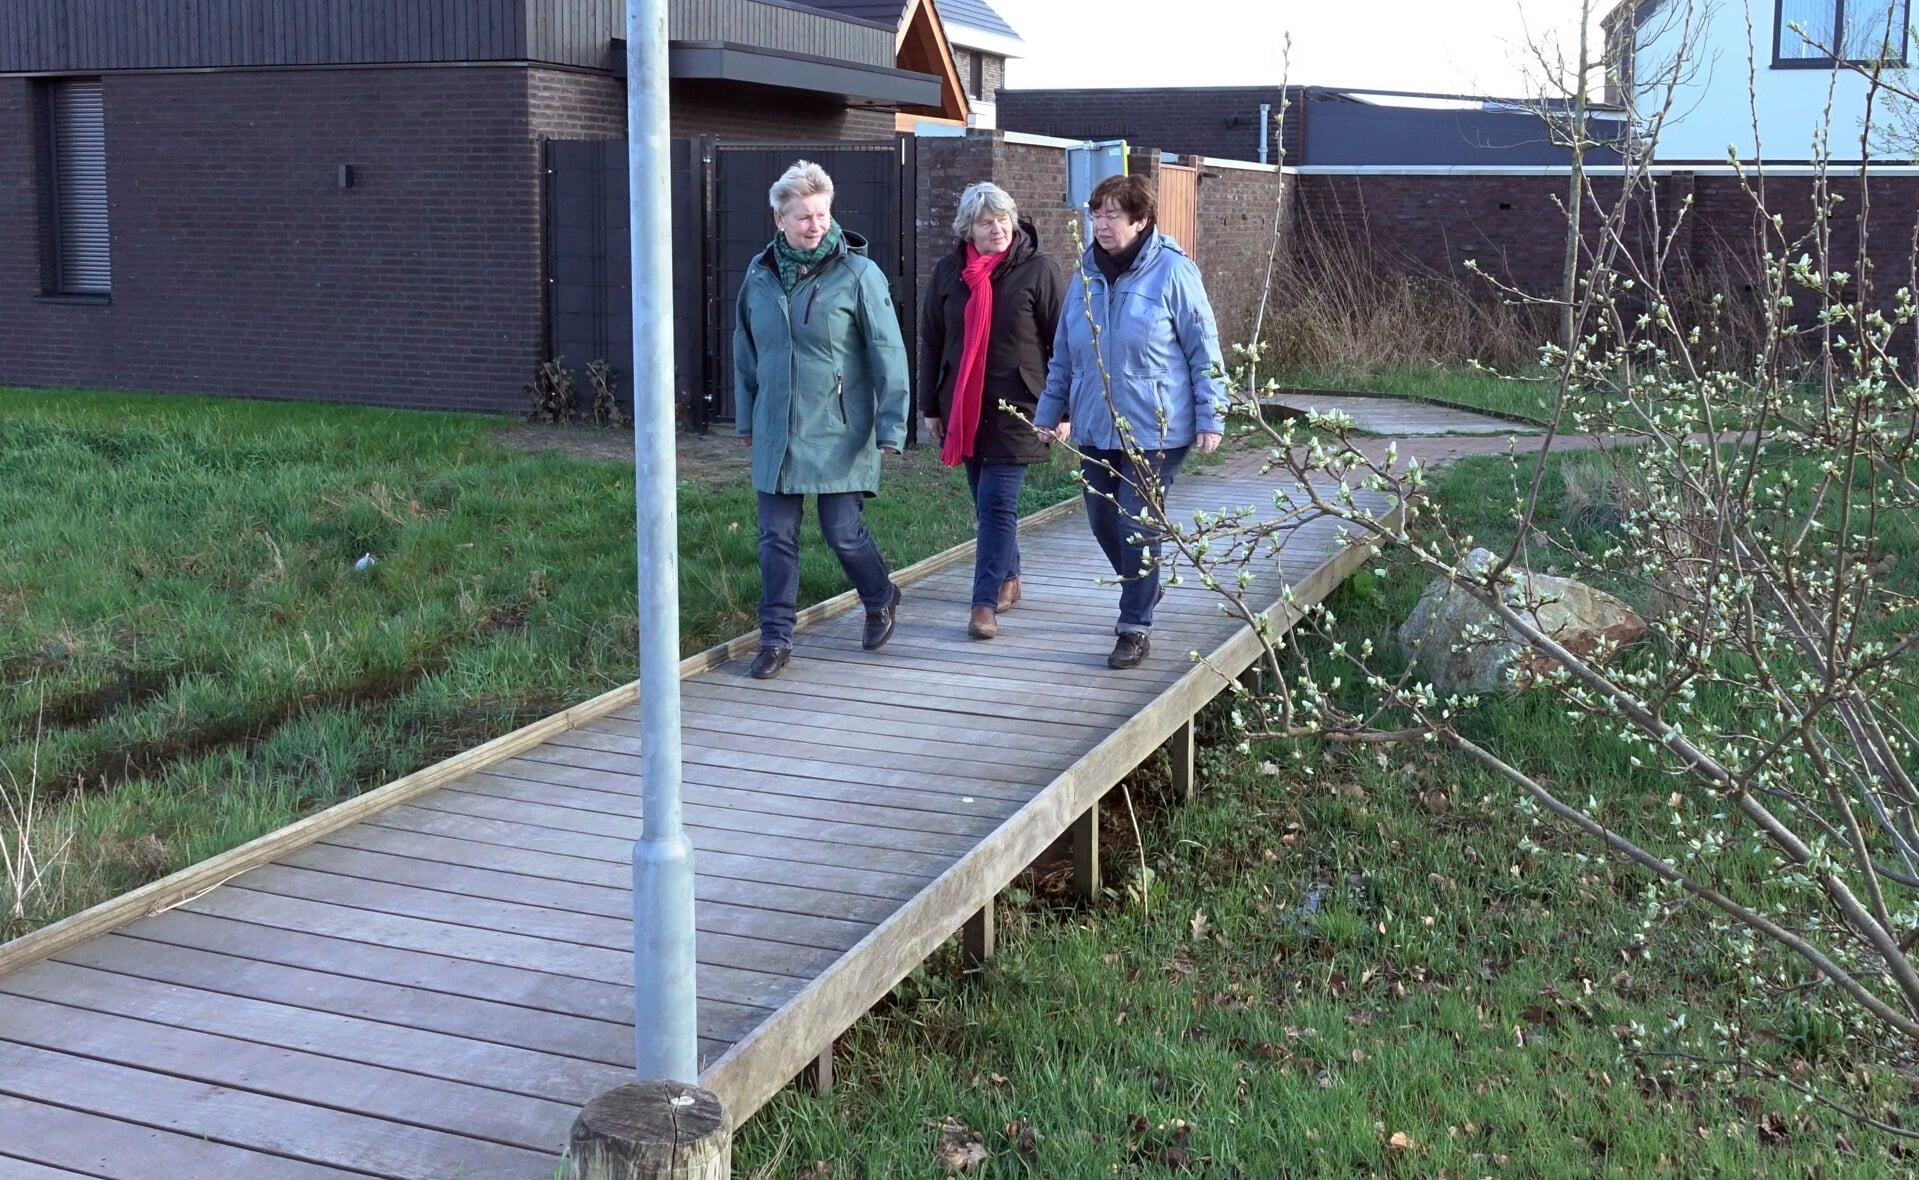 Werkgroepleden Corrie Steenbergen, Lia Vorstenbosch en Mieke Tak (van links naar rechts) lopen een van de drie ommetjes. De vlonderbrug in de nieuwe wijk Reigerskant krijgt nog een ruwer oppervlak, dan kan het bordje weg.